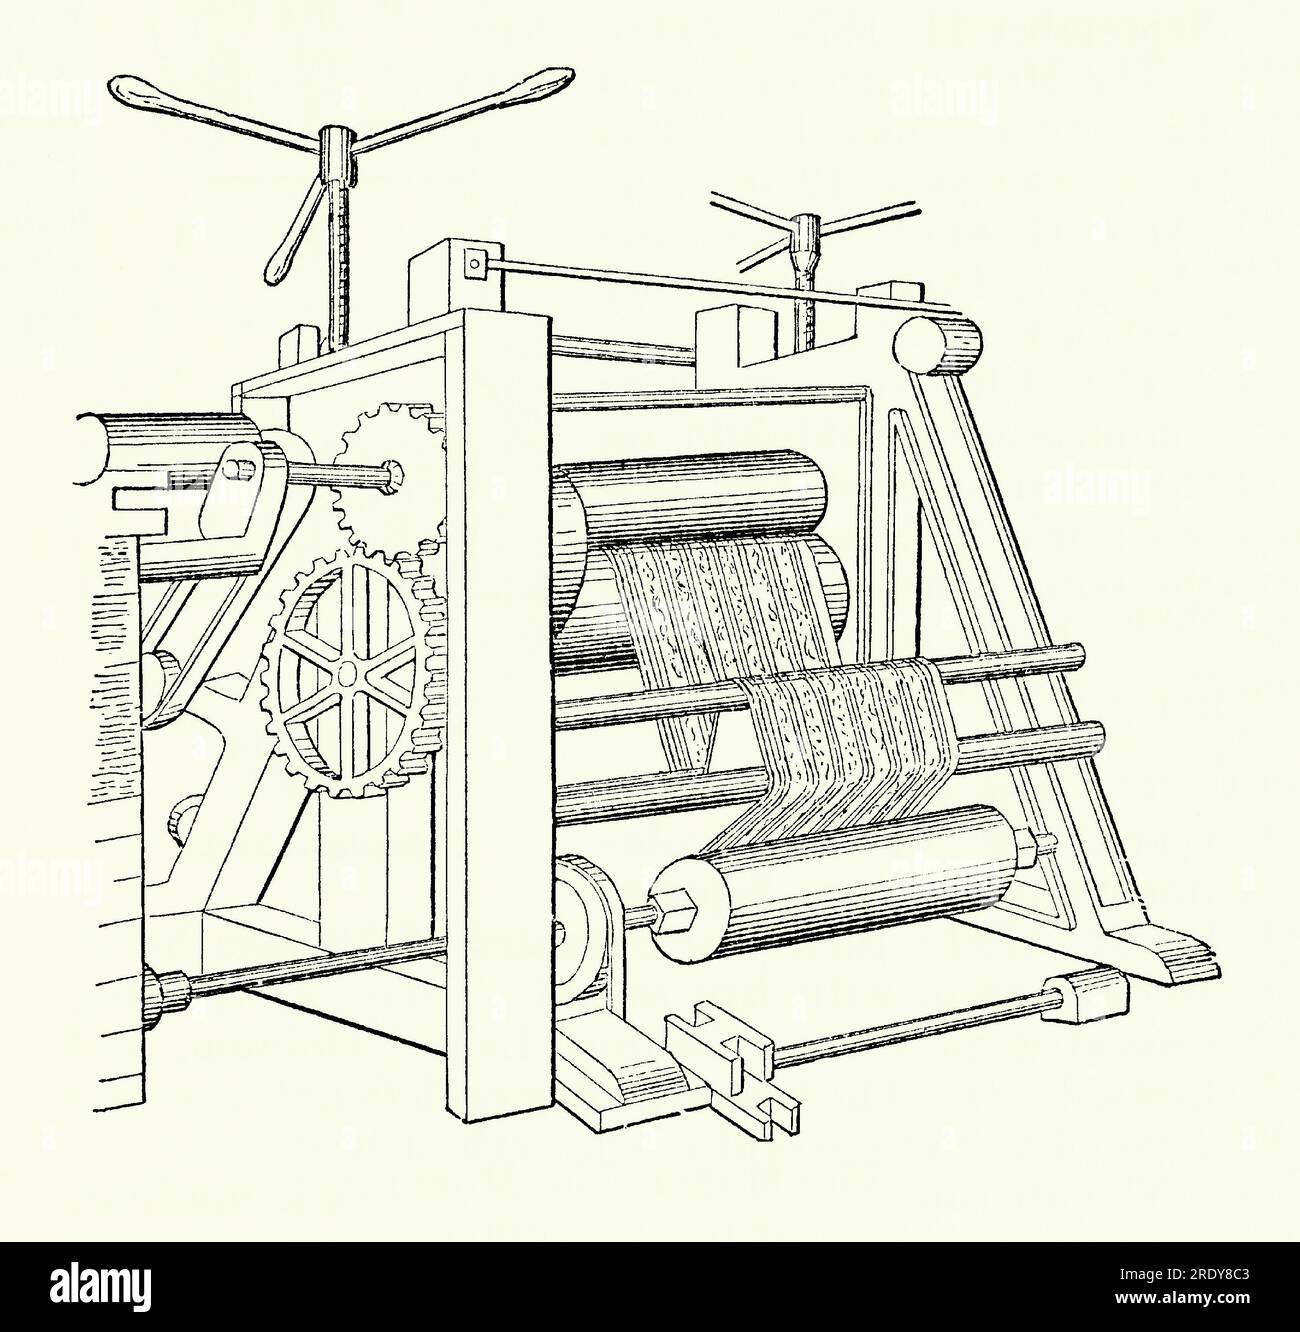 Eine alte Gravur einer viktorianischen Kalendermaschine. Es stammt aus einem Maschinenbau-Buch der 1880er Jahre. Ein Kalander besteht aus einer Reihe von harten Druckwalzen, die zum Glätten oder Glätten von Materialbögen wie Papier, Textilien und Gummi verwendet werden. Hier wird ein gemusterter Stoff oder ein gemustertes Papier durch die Drehrollen der Maschine geführt. Der Druck zwischen den Rollen kann mithilfe der beiden Griffe (oben) eingestellt werden. Einige Kalenderrollen können auch beheizt oder gekühlt werden. 1836 patentierte American Edwin M Chaffee von der Roxbury India Rubber Company einen vierrolligen Kalander für die Herstellung von Gummimatte. Stockfoto